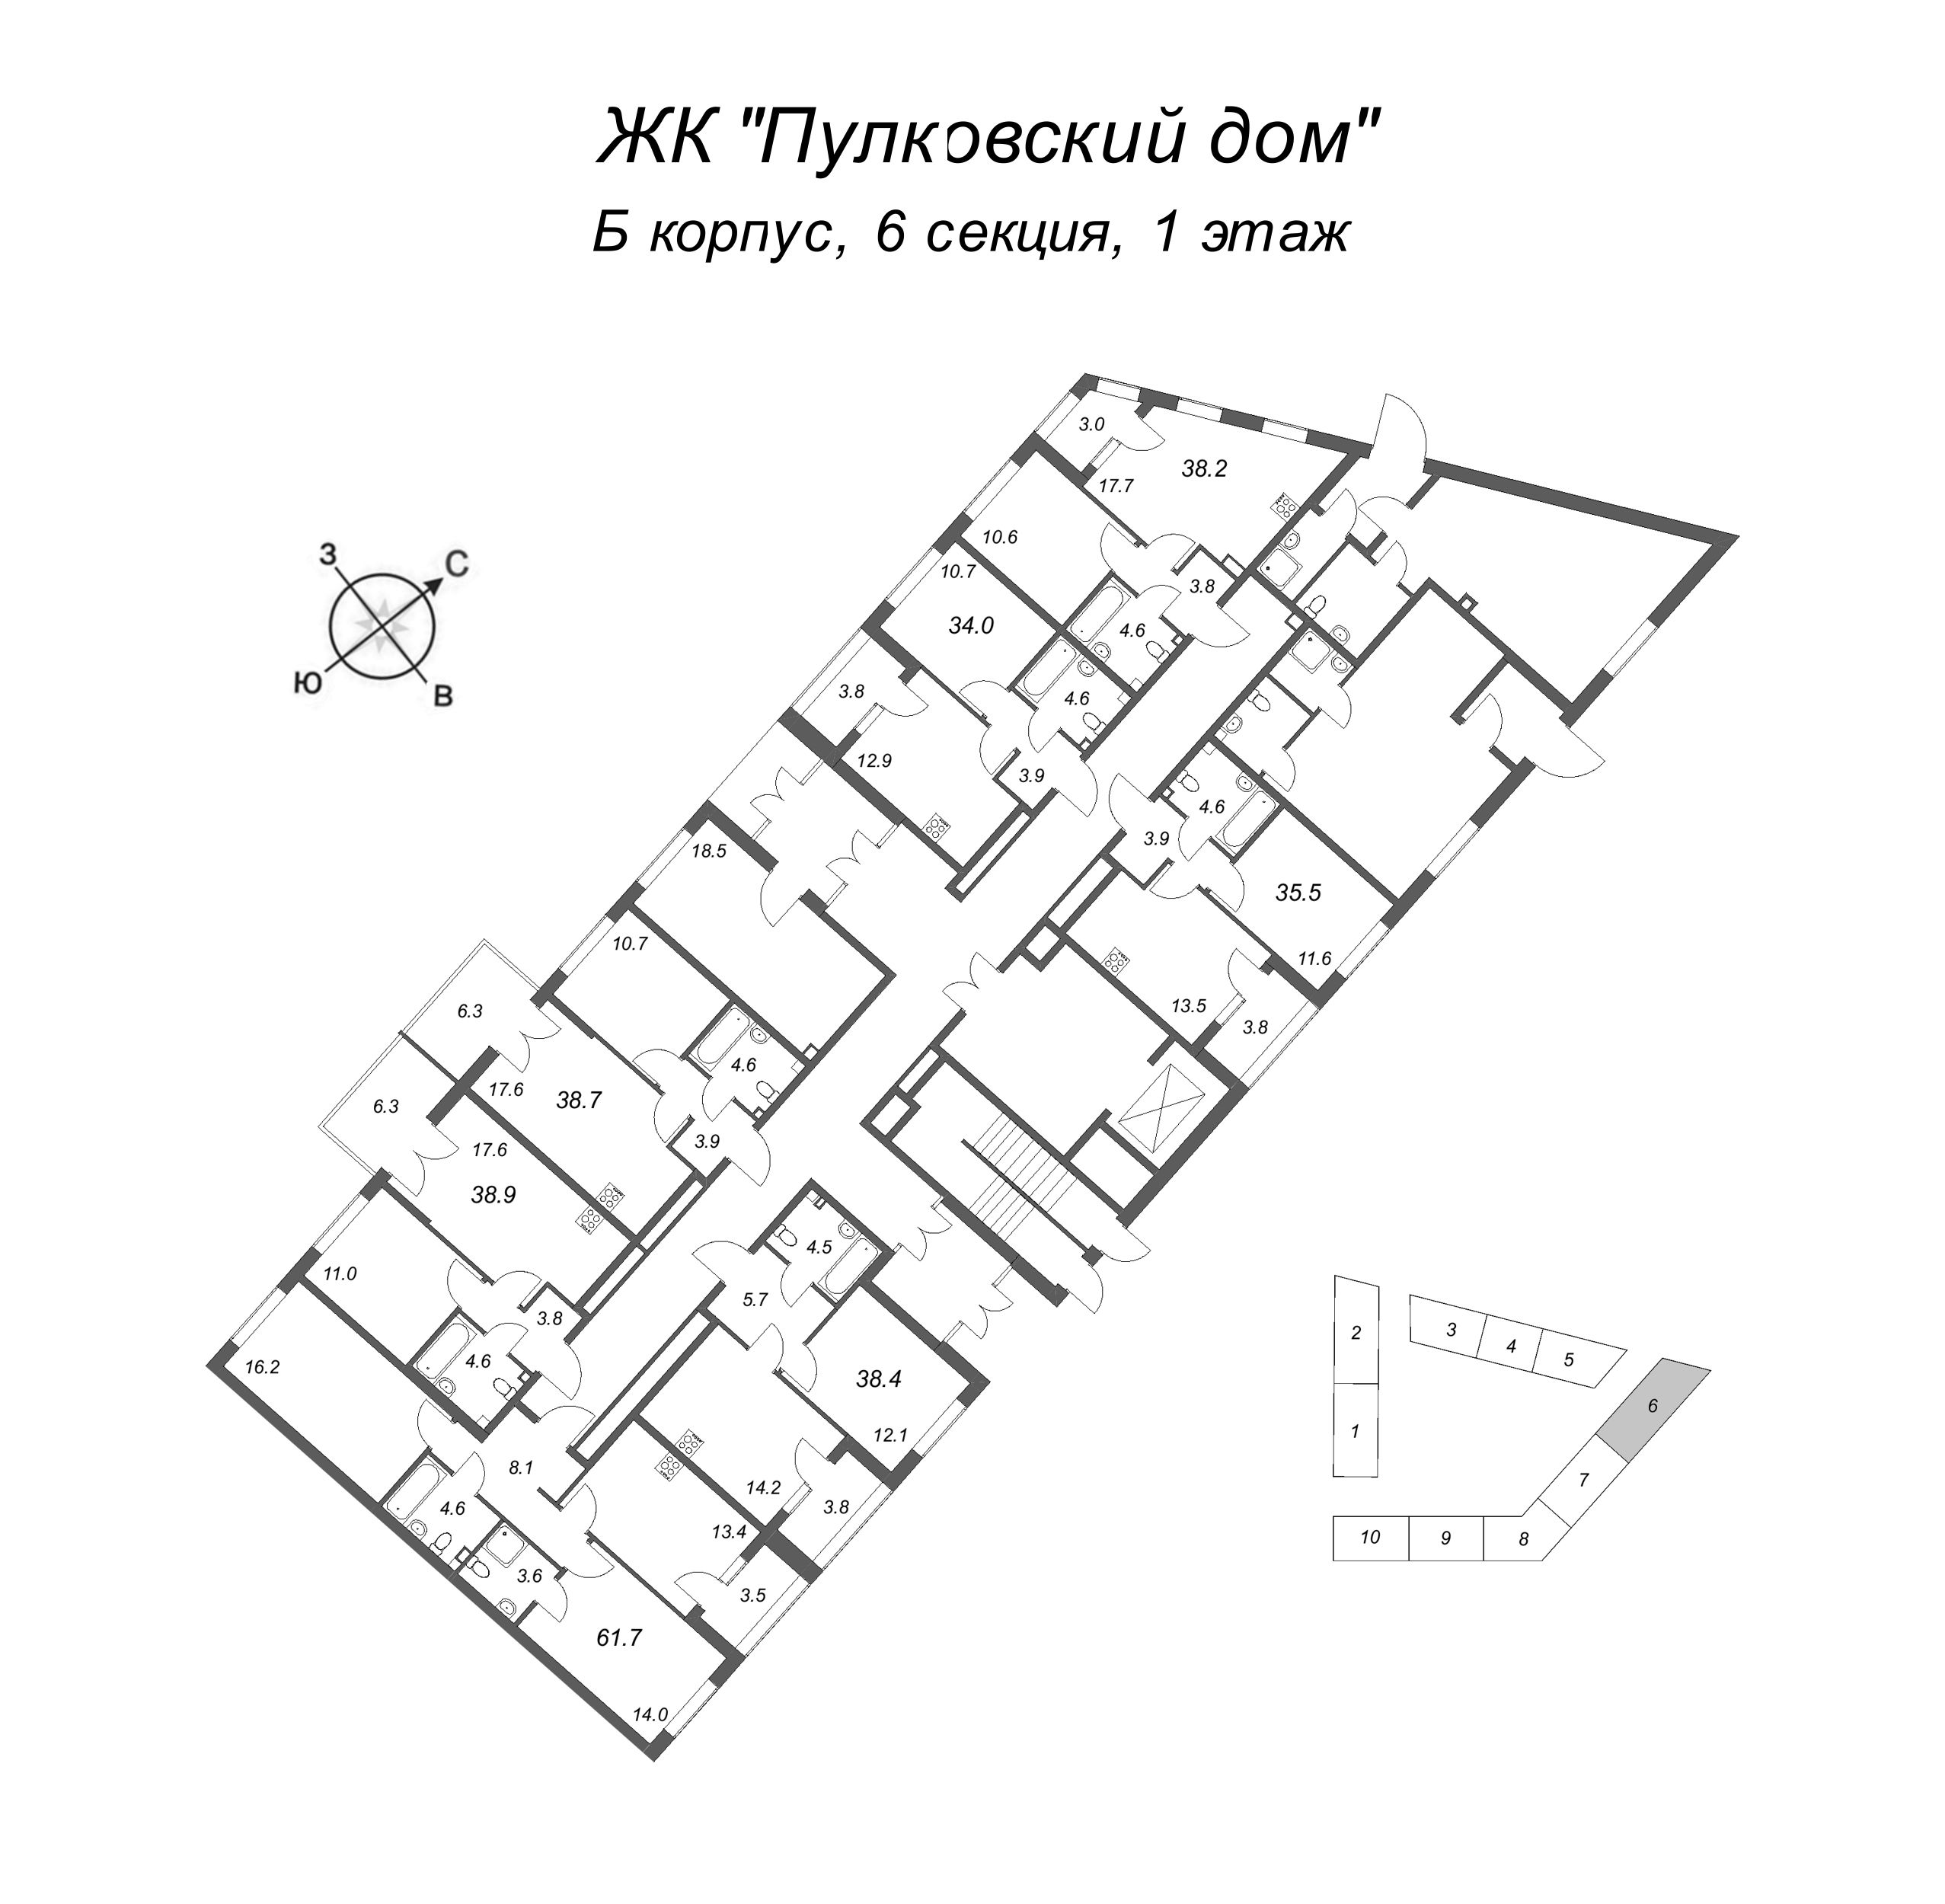 2-комнатная (Евро) квартира, 38.7 м² в ЖК "Пулковский дом" - планировка этажа